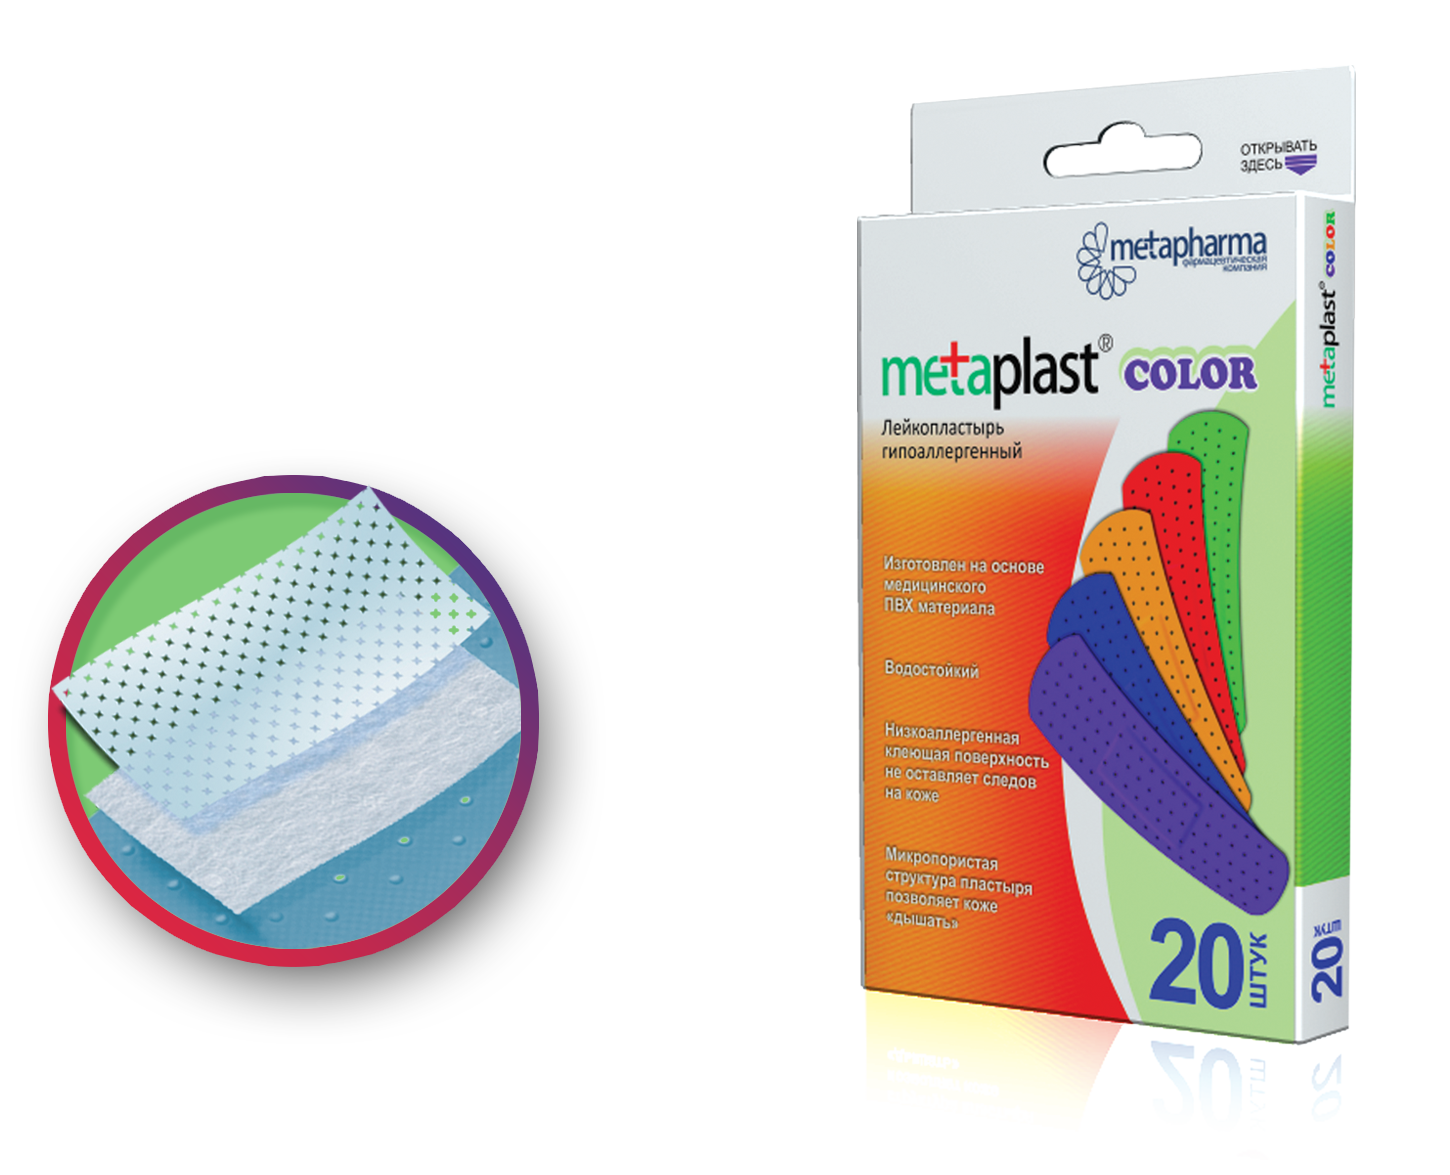 Metaplast Color